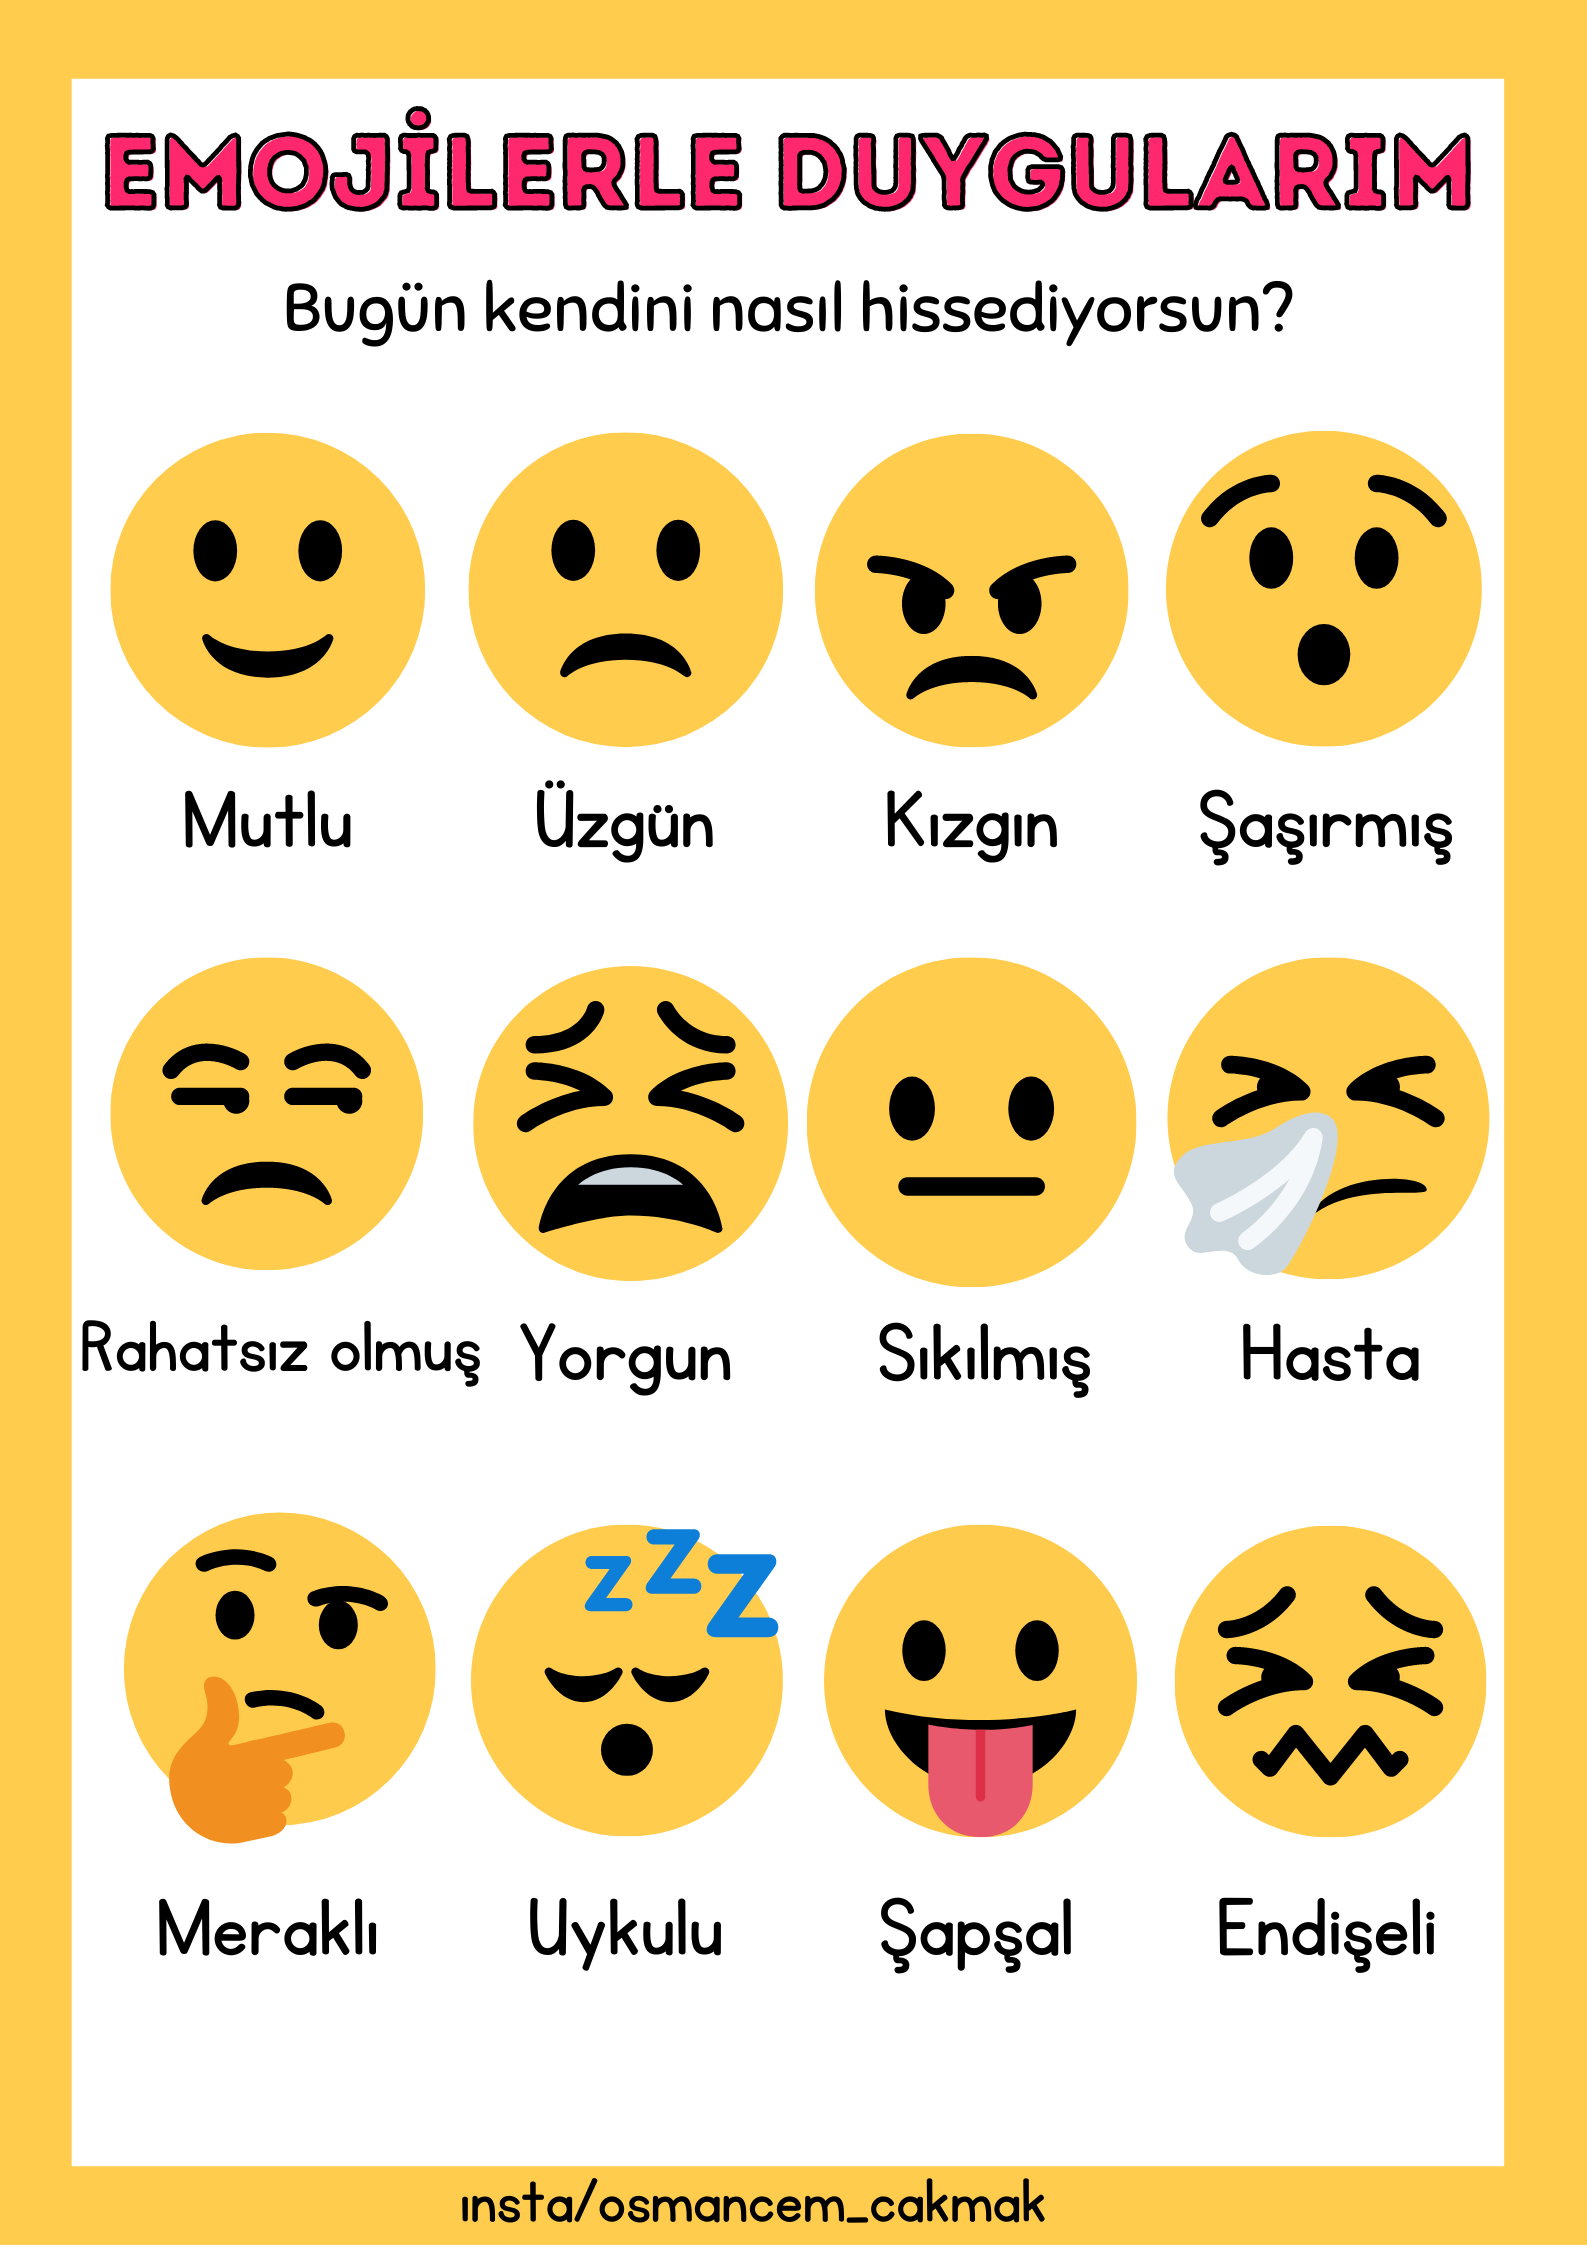 Emojilerle Duygularım Etkinliği